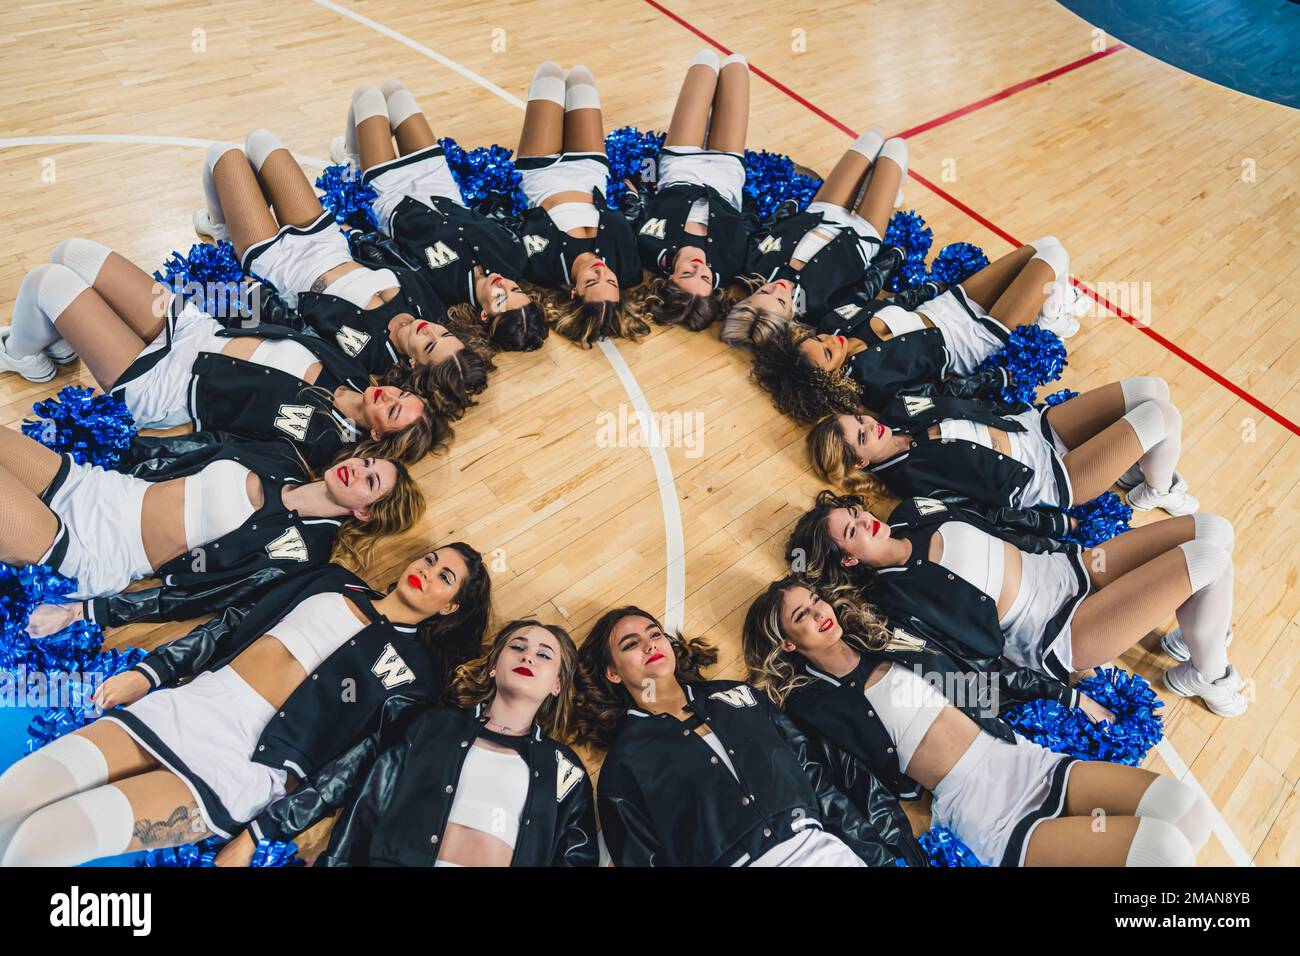 Cheerleading team in uniformi adagiato su un campo da basket in un cerchio con pom blu lucido nelle loro mani. Foto di alta qualità Foto Stock